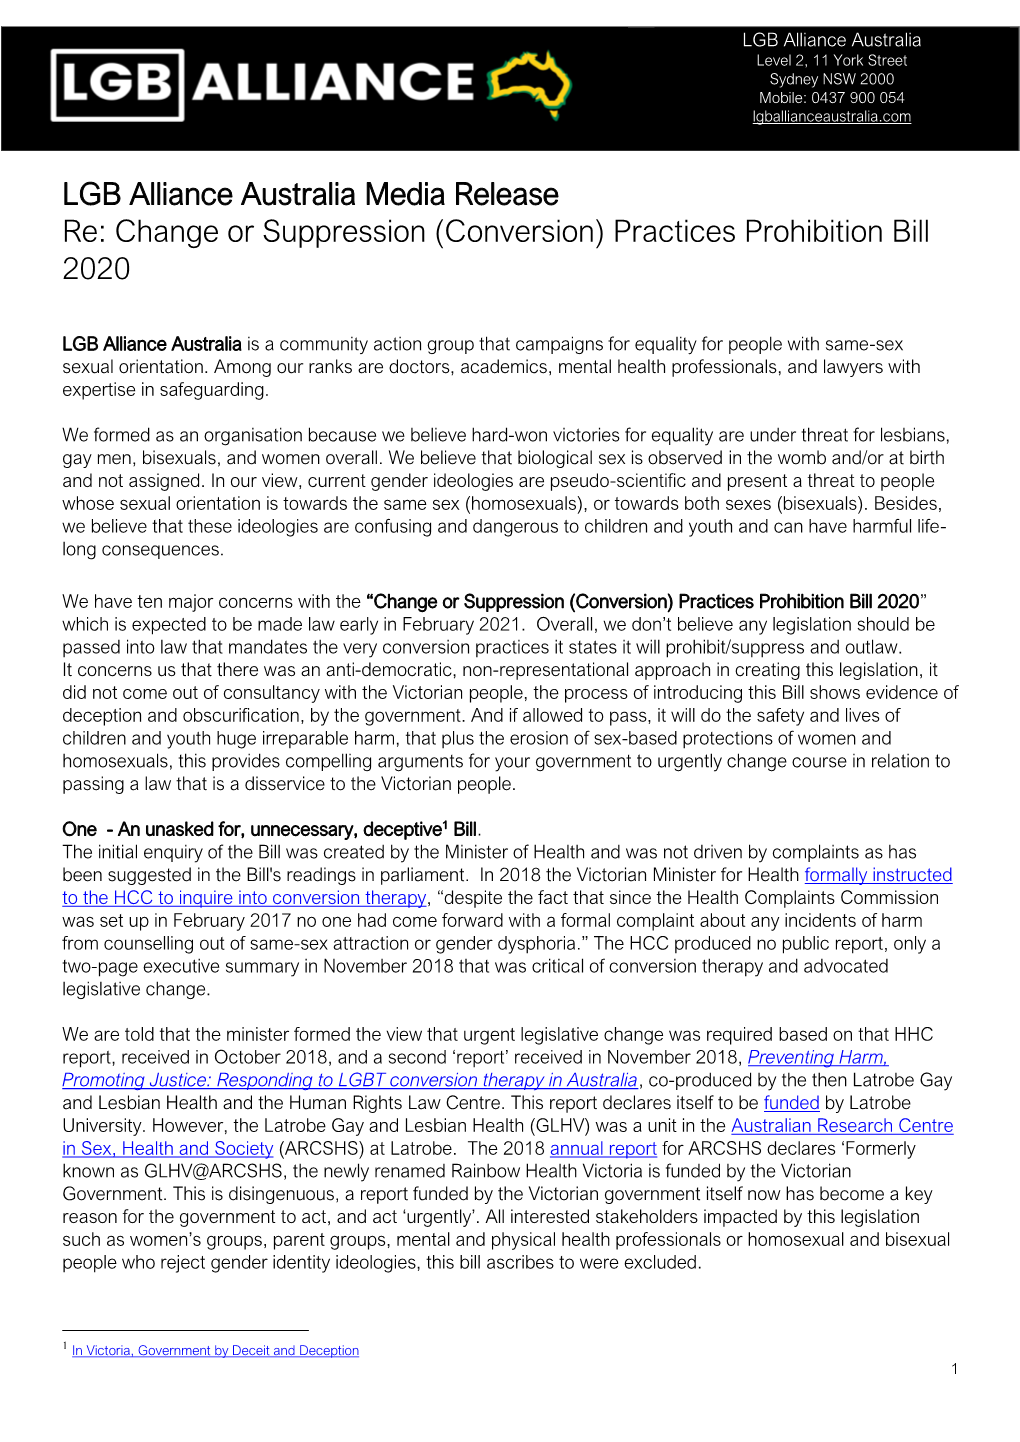 LGB Alliance Australia Media Release Re: Change Or Suppression (Conversion) Practices Prohibition Bill 2020